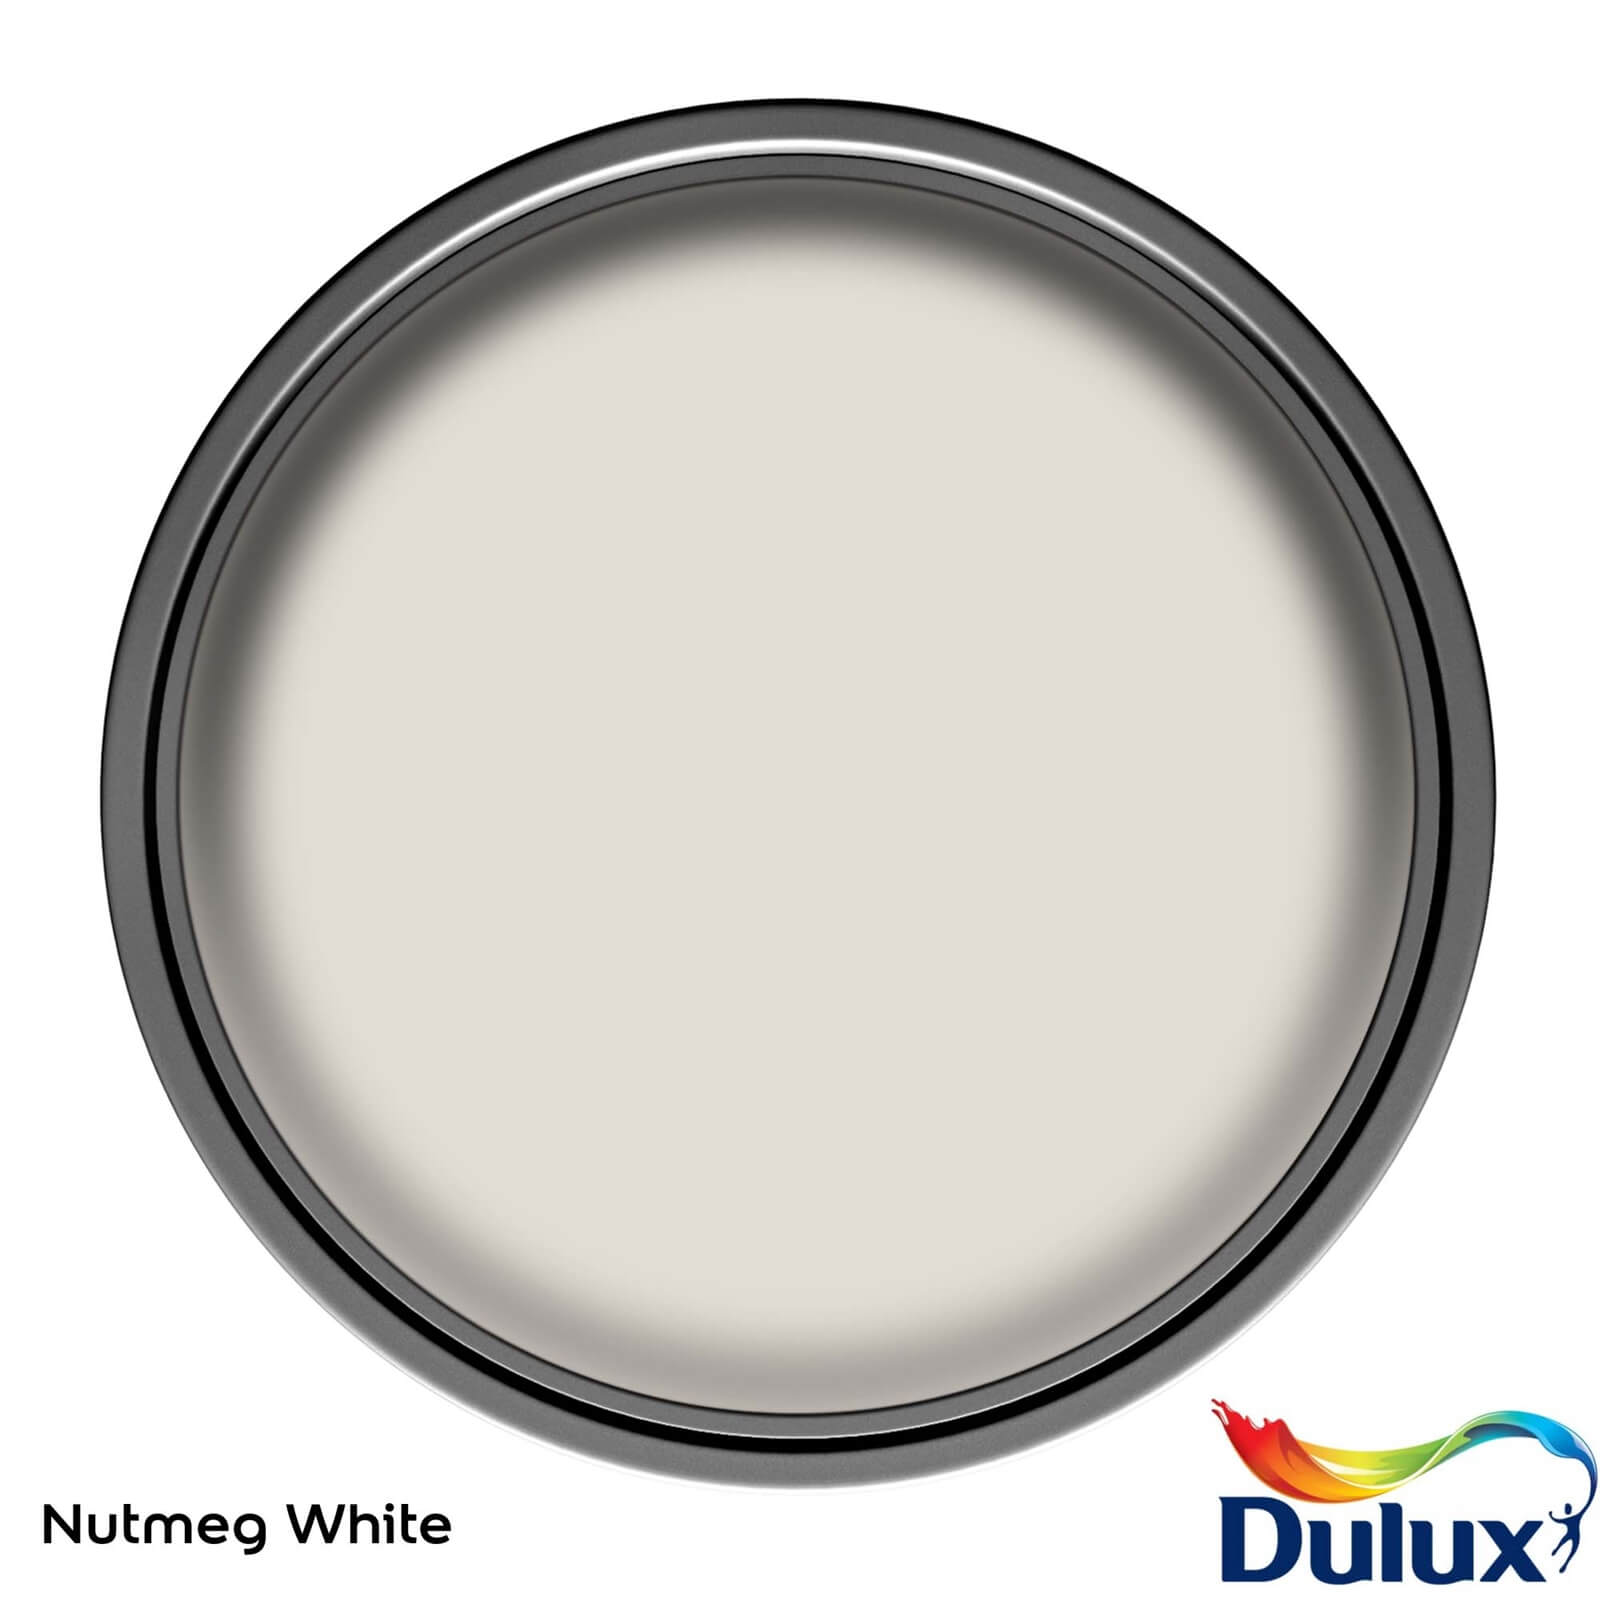 Dulux Easycare Washable & Tough Matt Paint Nutmeg White - 2.5L